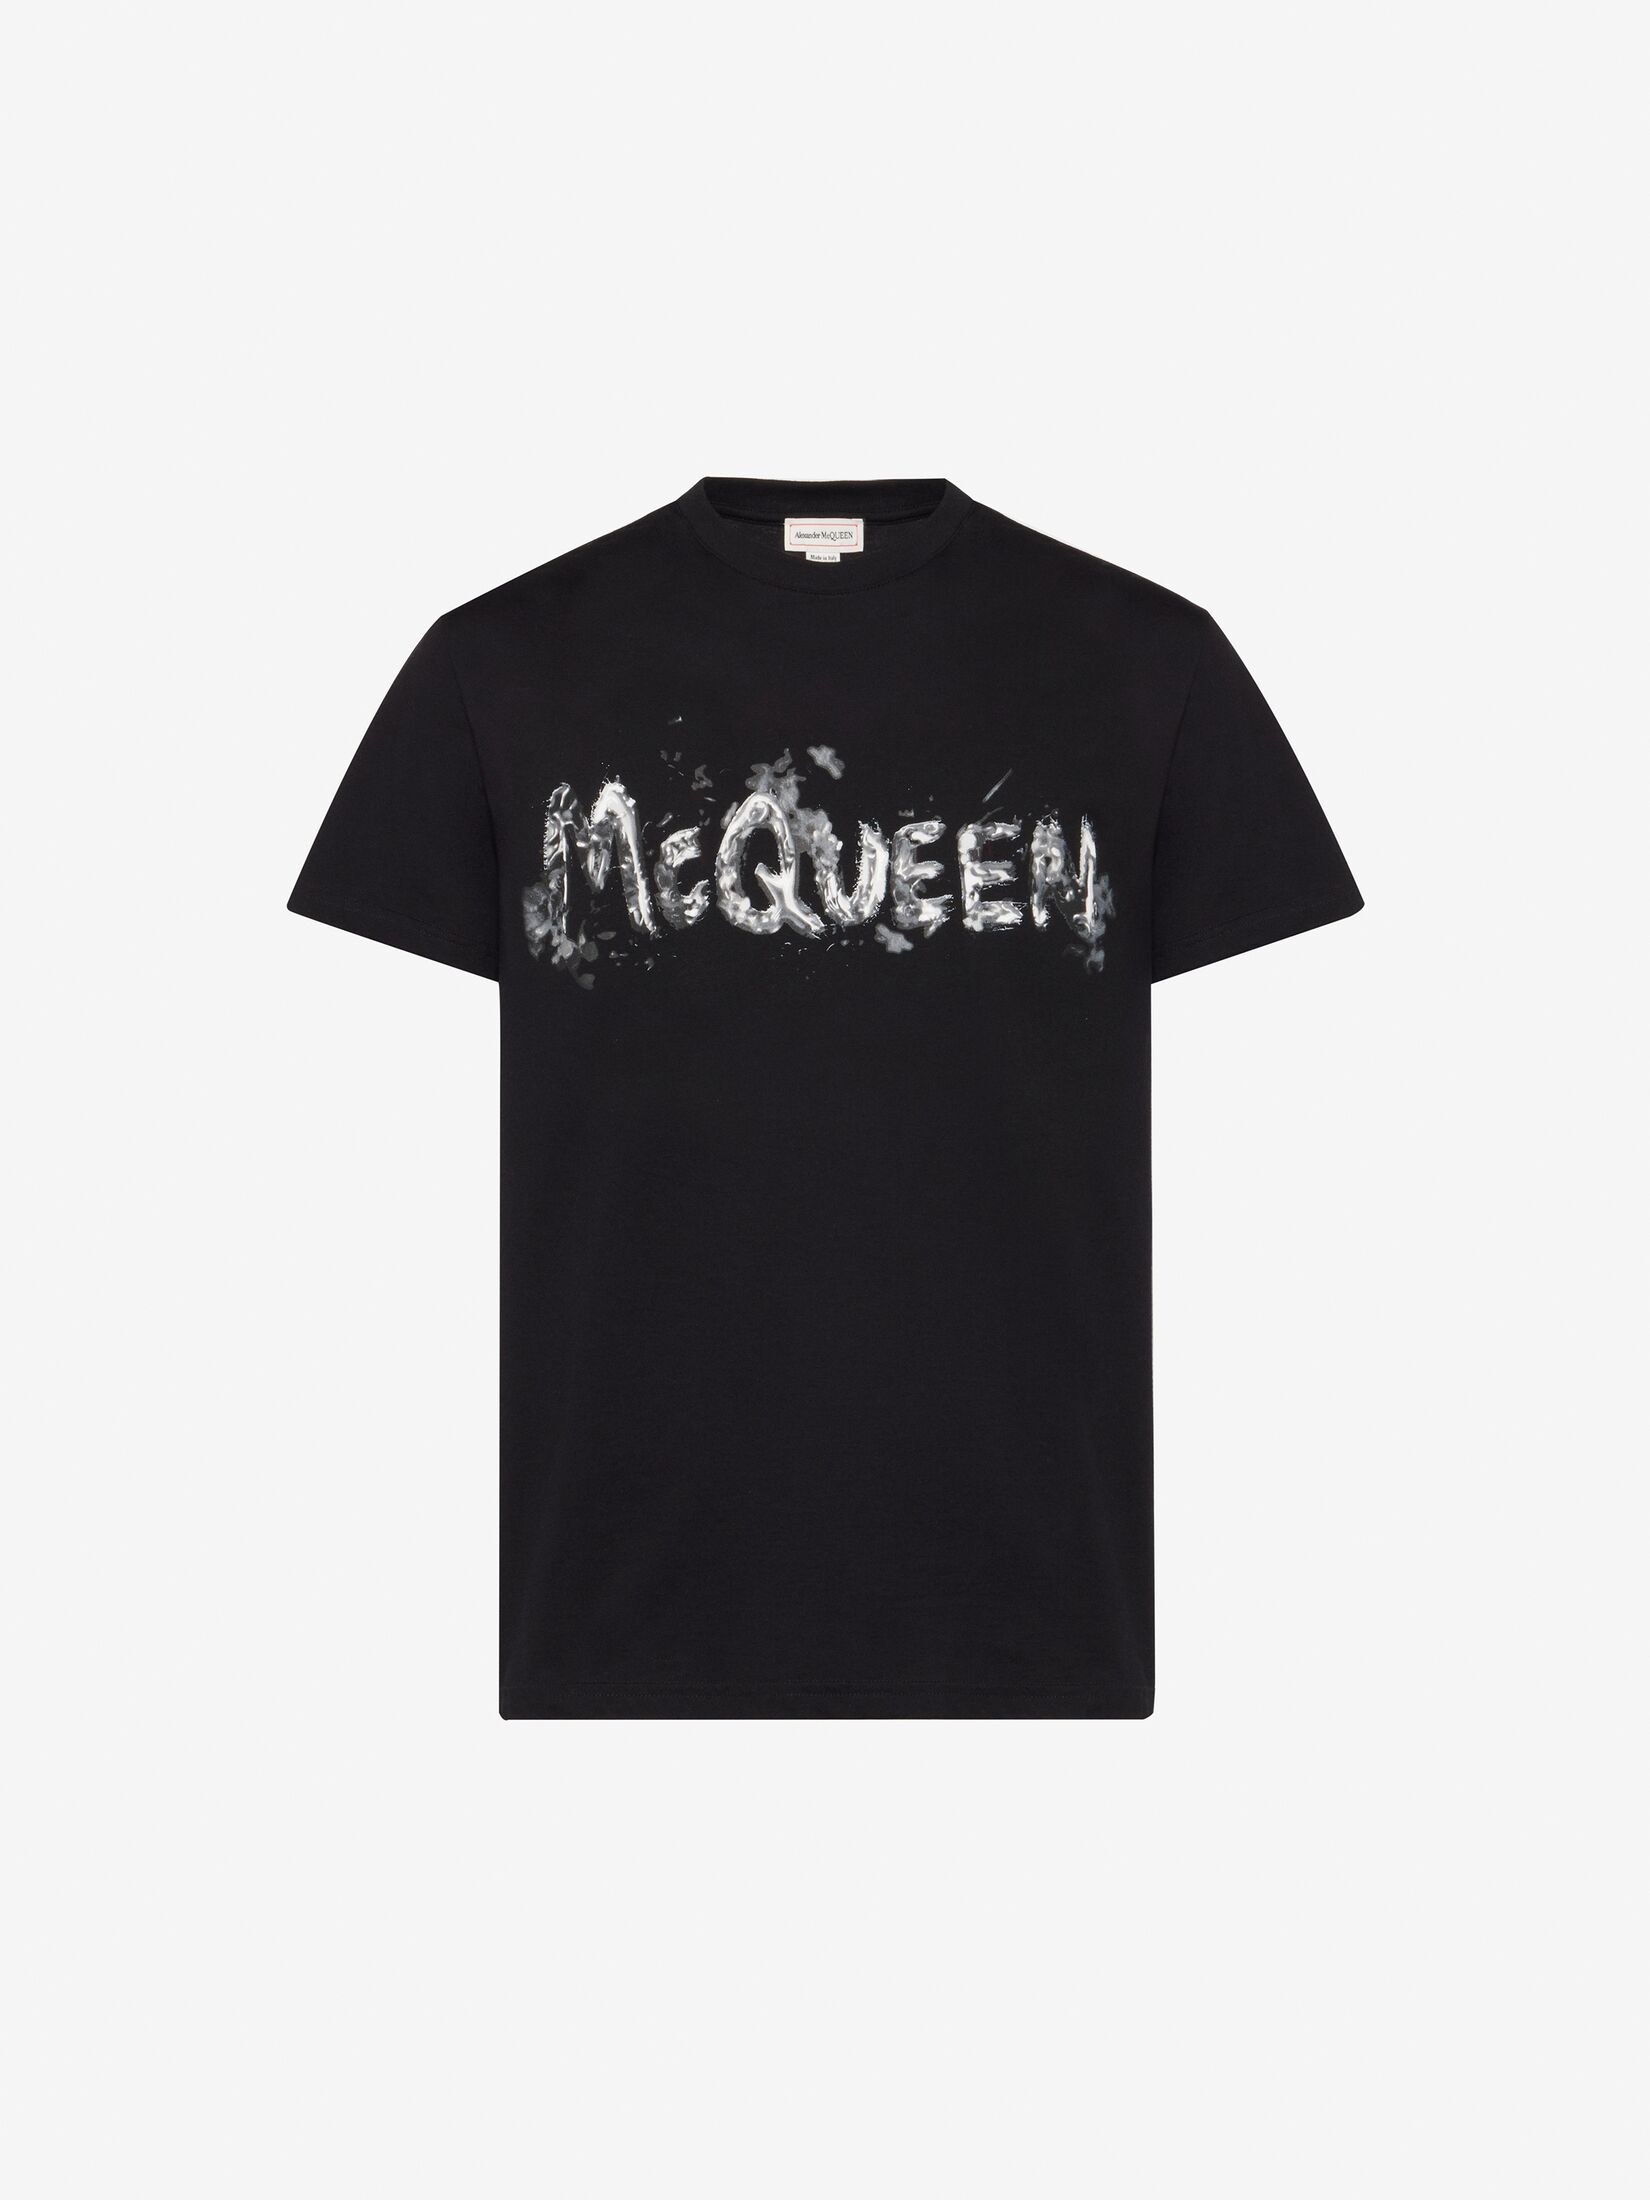 McQueenグラフィティ Tシャツ